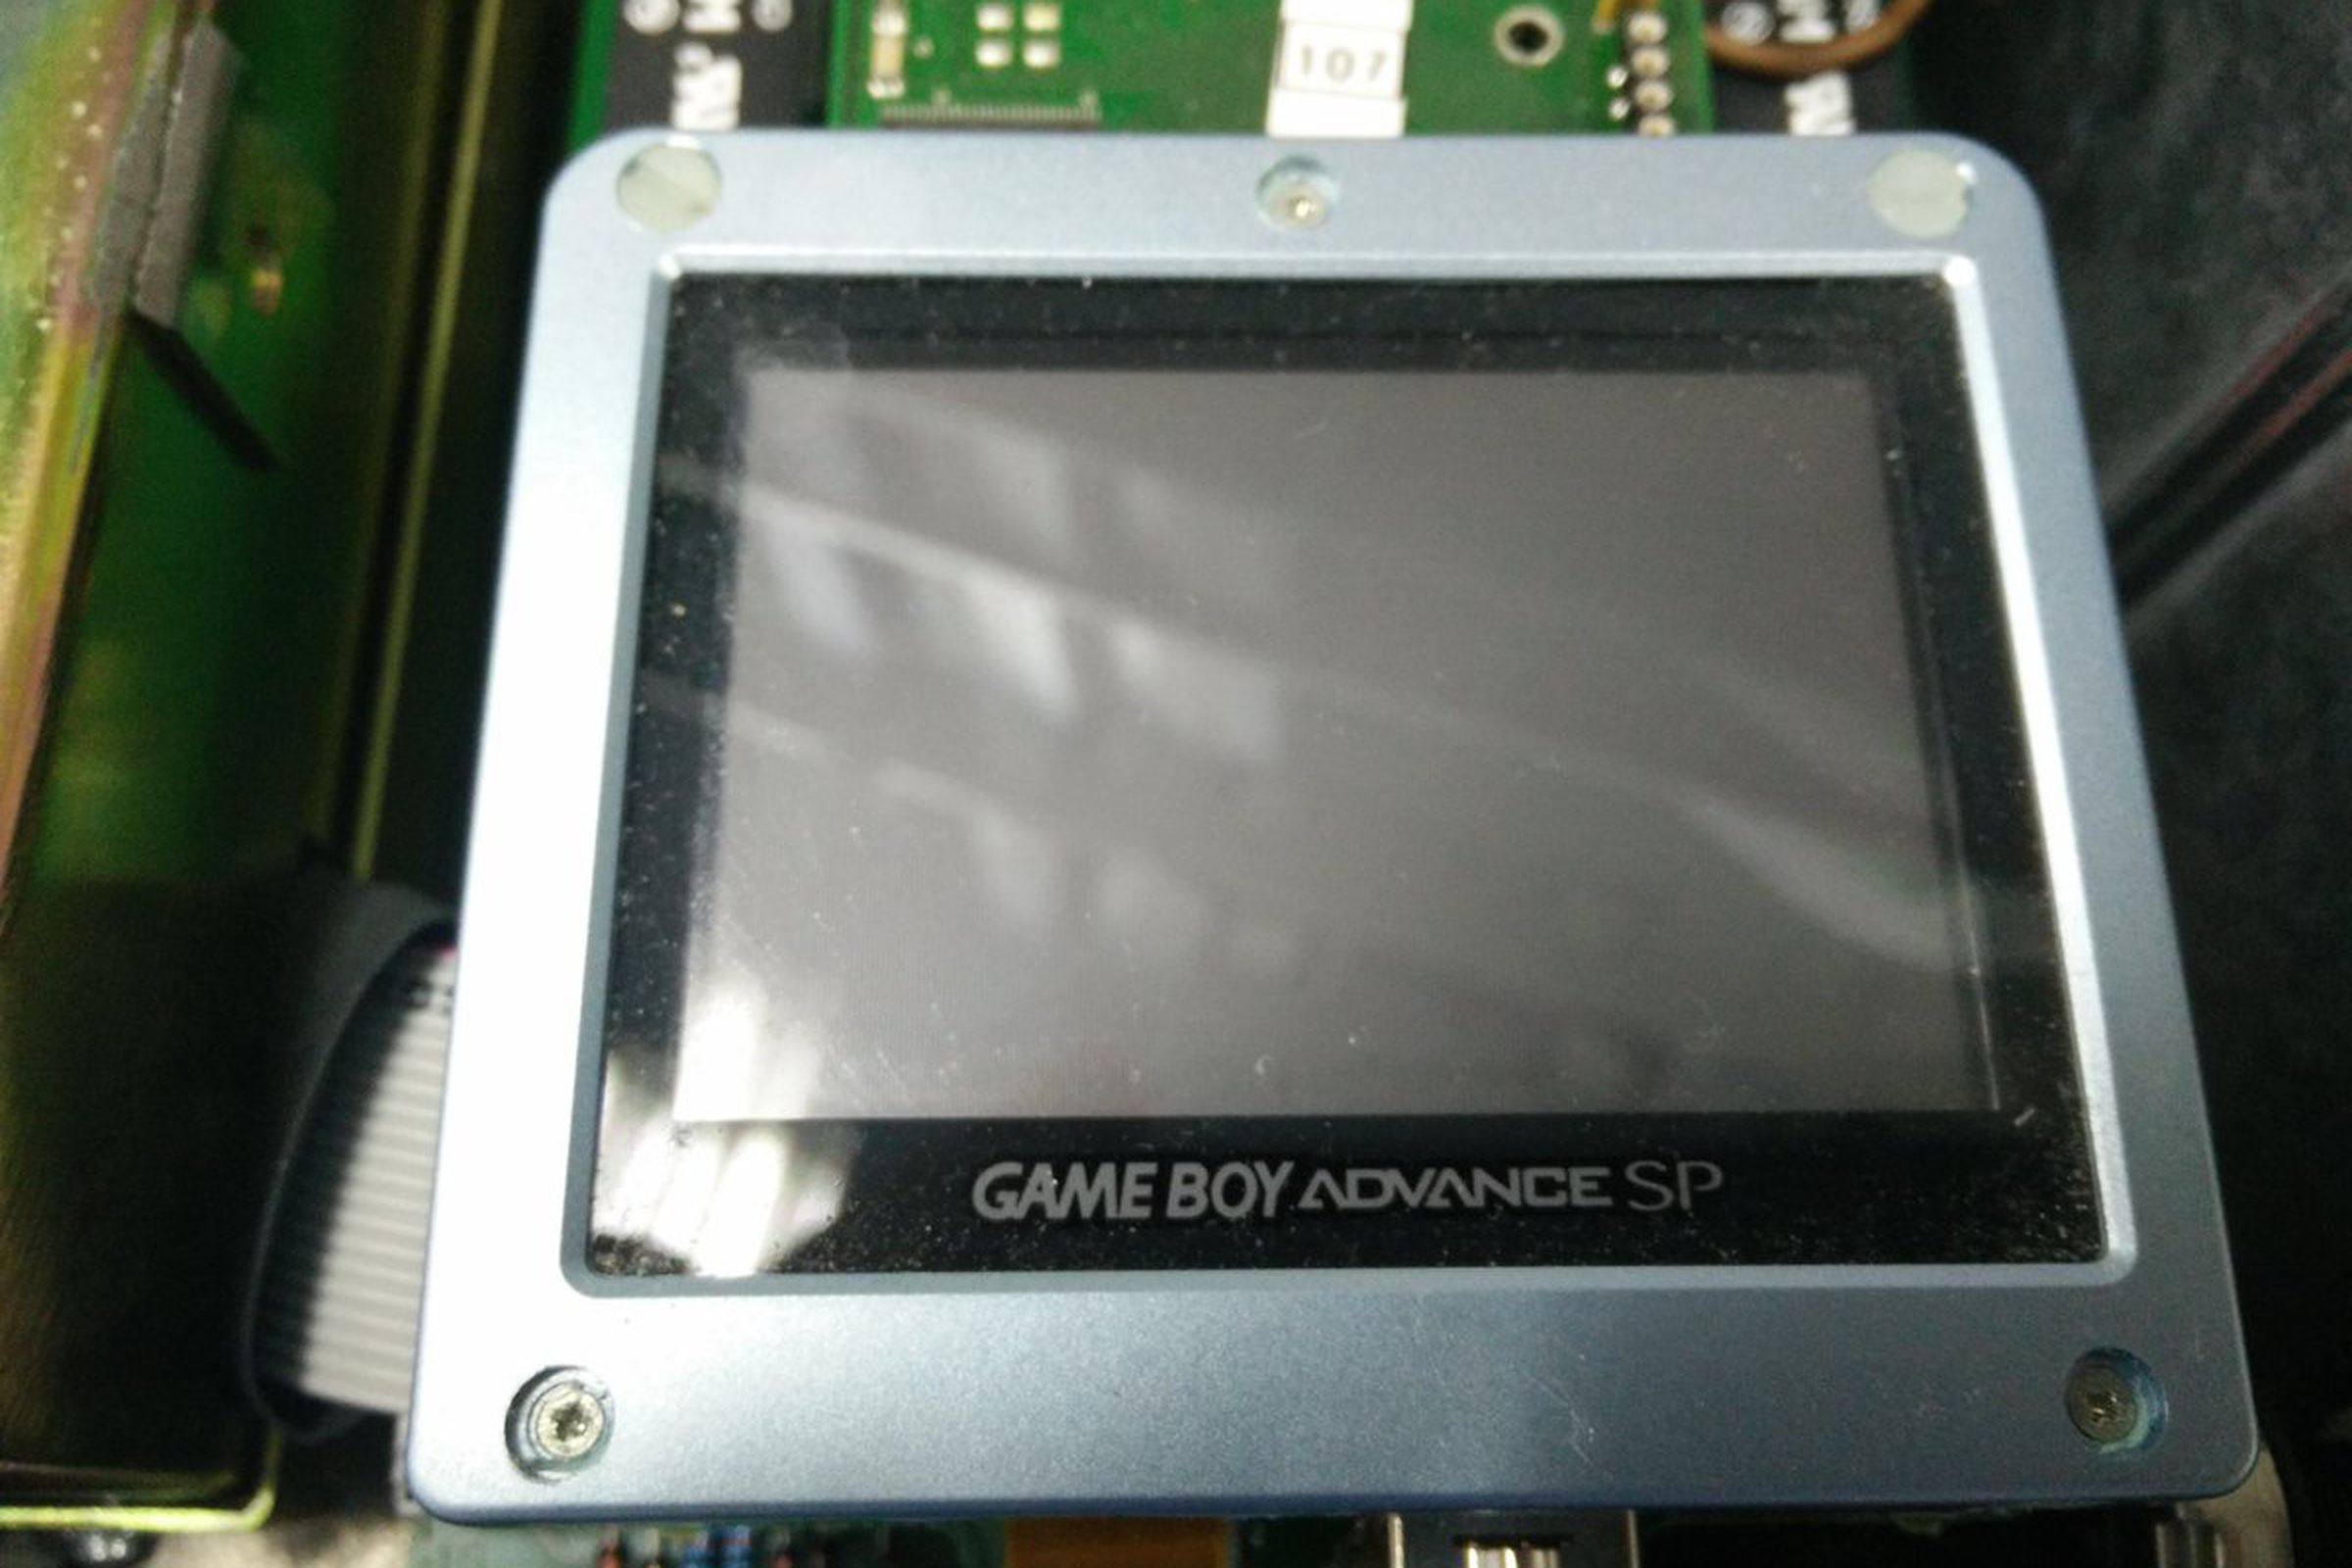 Game Boy Advance in ECG machine